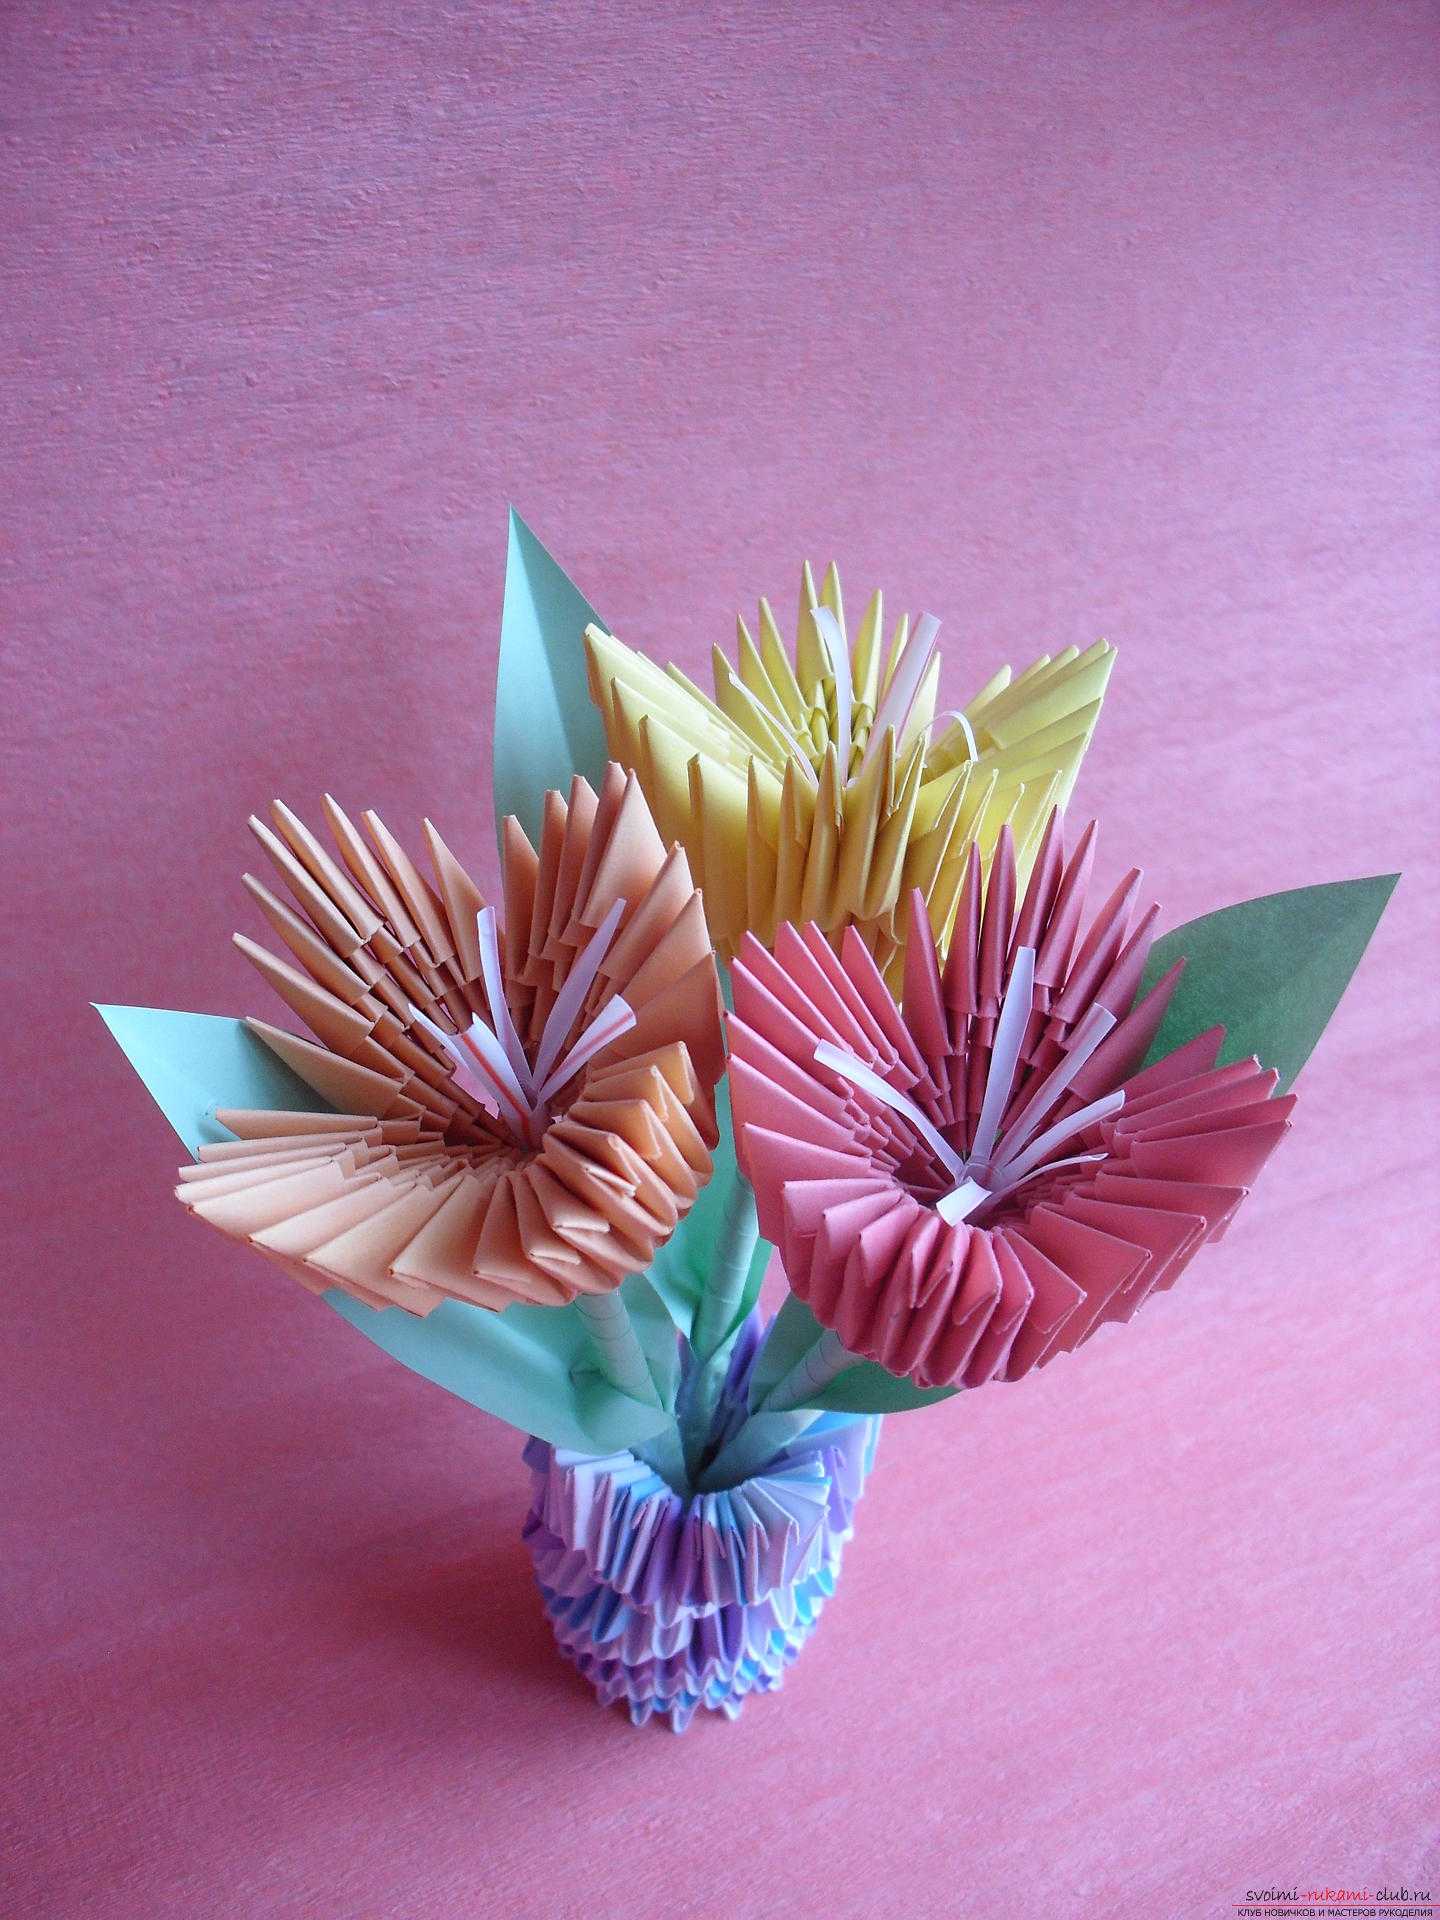 Как сделать оригами для начинающих и детей - инструкция с пошаговым руководством, и видео (100 фото)